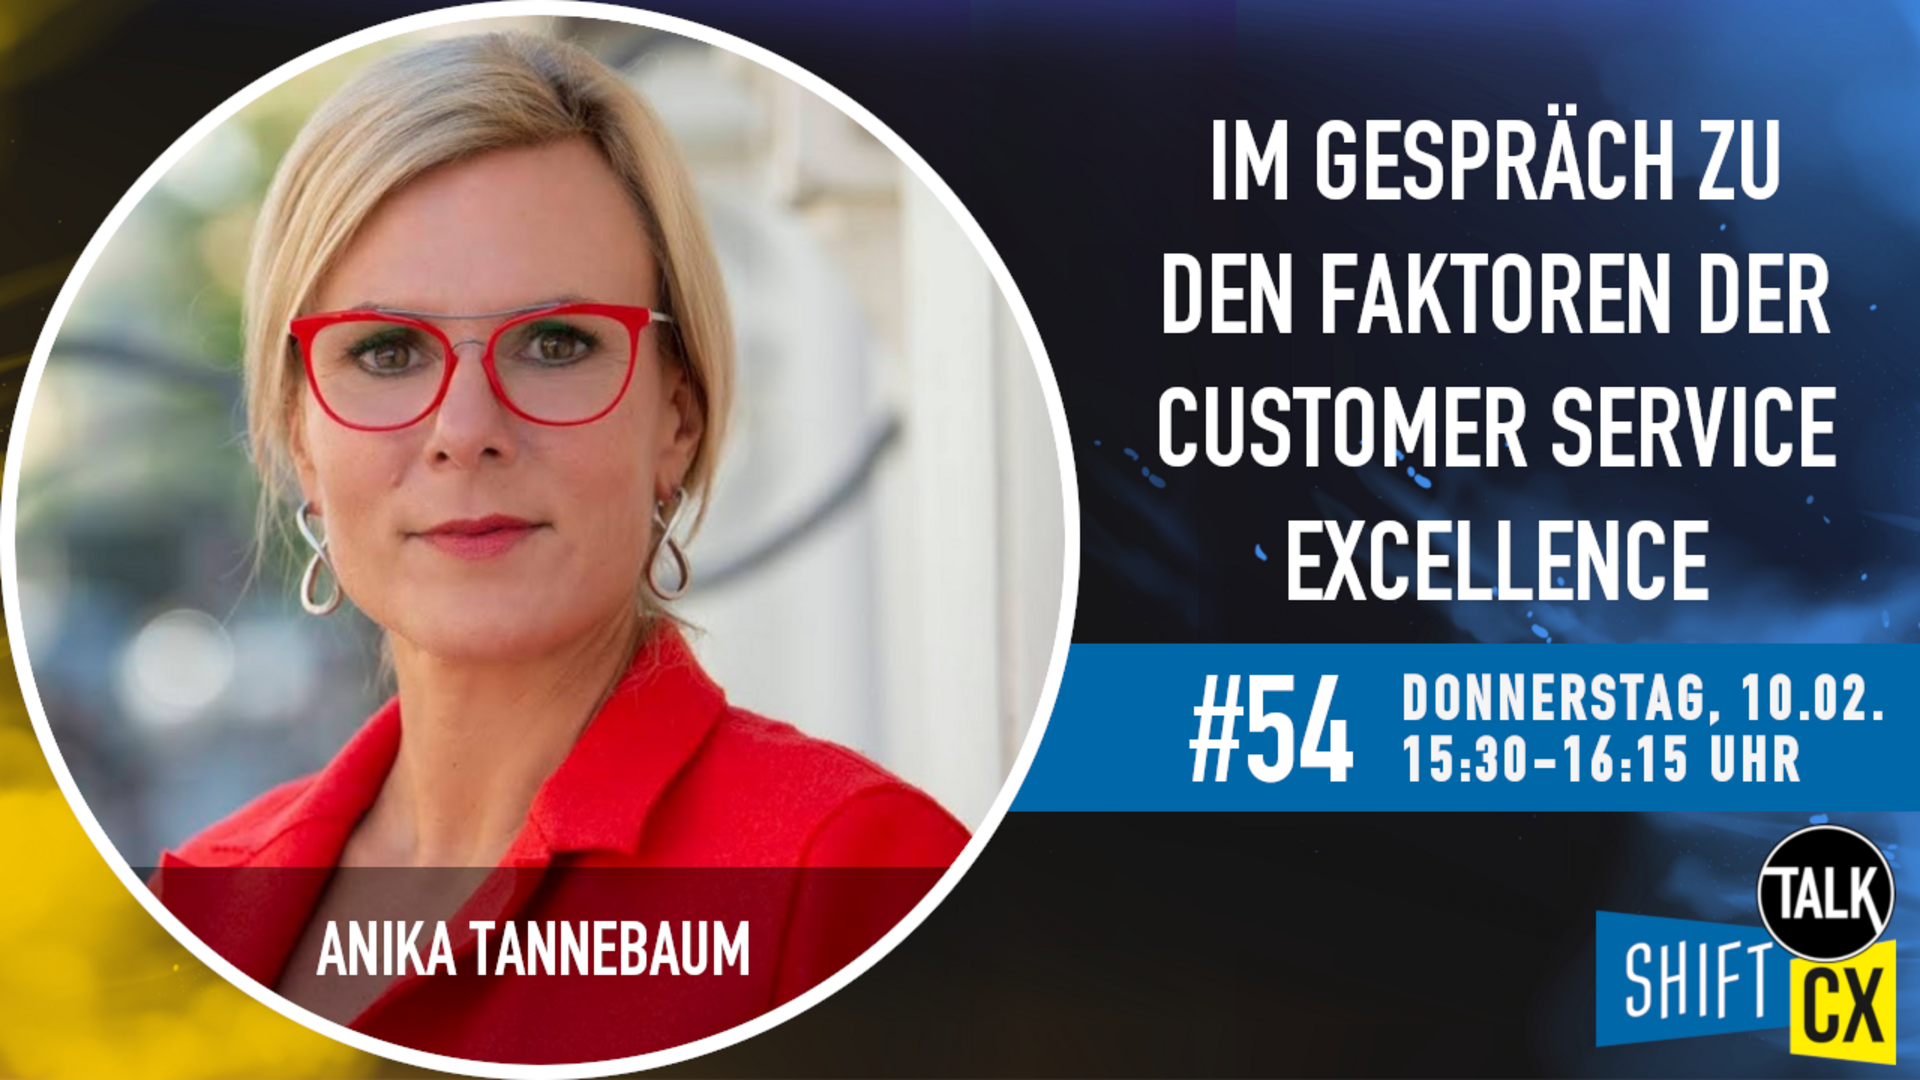 Im Gespräch mit Anika Tannebaum zur Customer Service Excellence